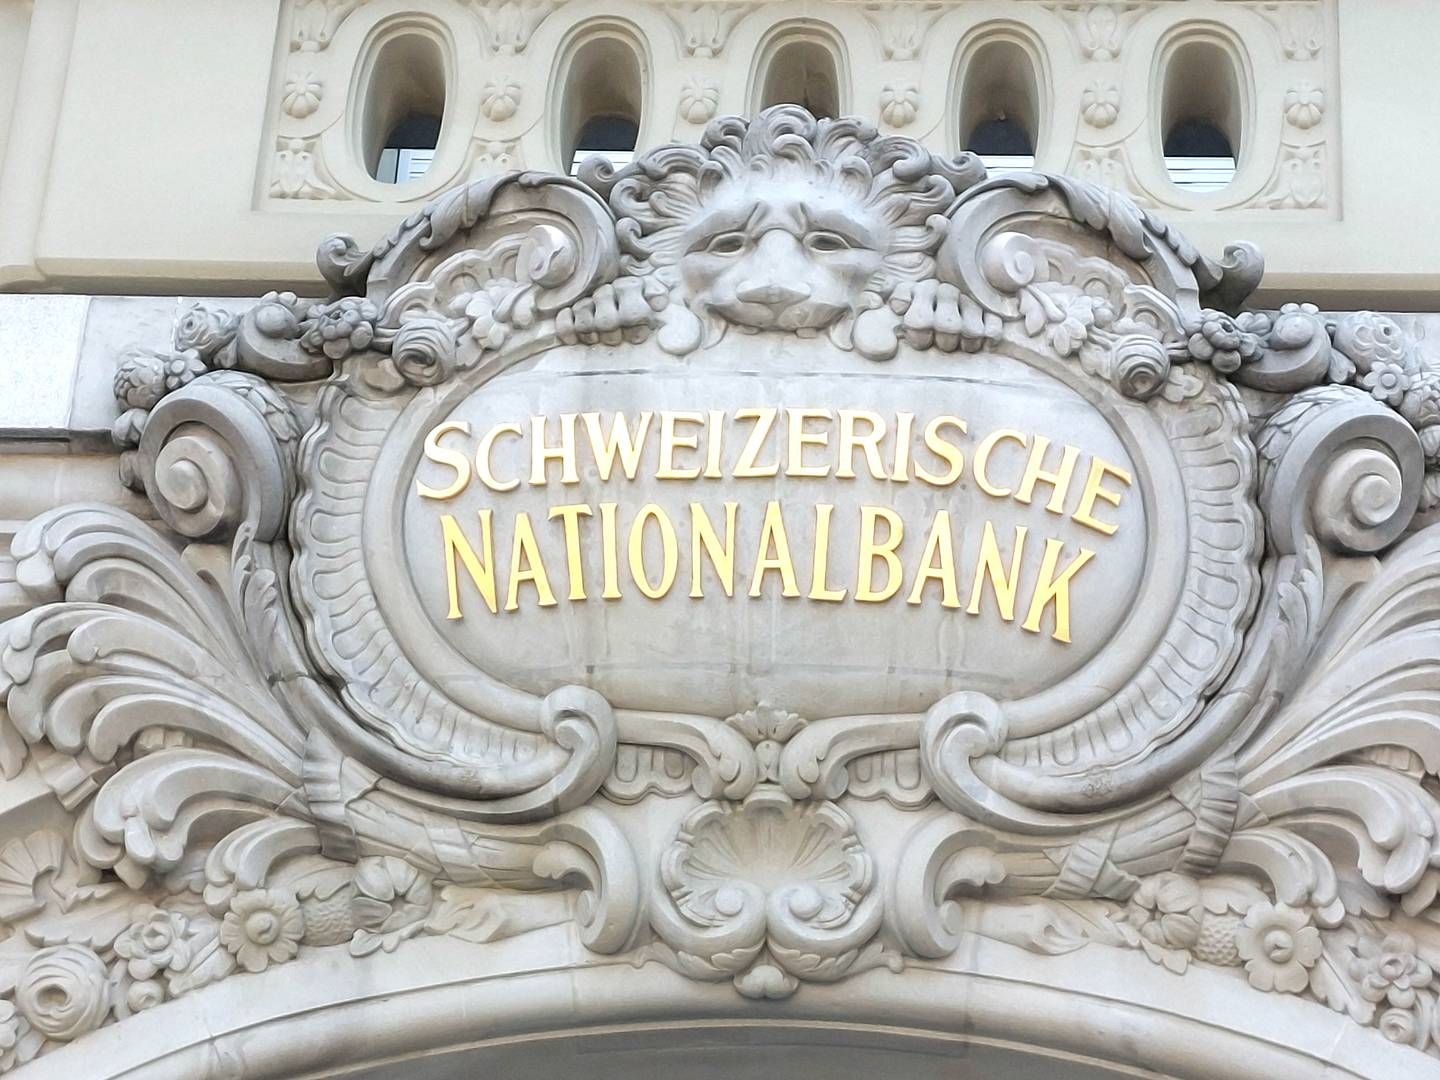 Reiht sich ein in die Gruppe der Banken, die digitales Zentralbank testen: Die Schweizerische Nationalbank. | Foto: picture alliance / Eibner-Pressefoto | Fleig / Eibner-Pressefoto